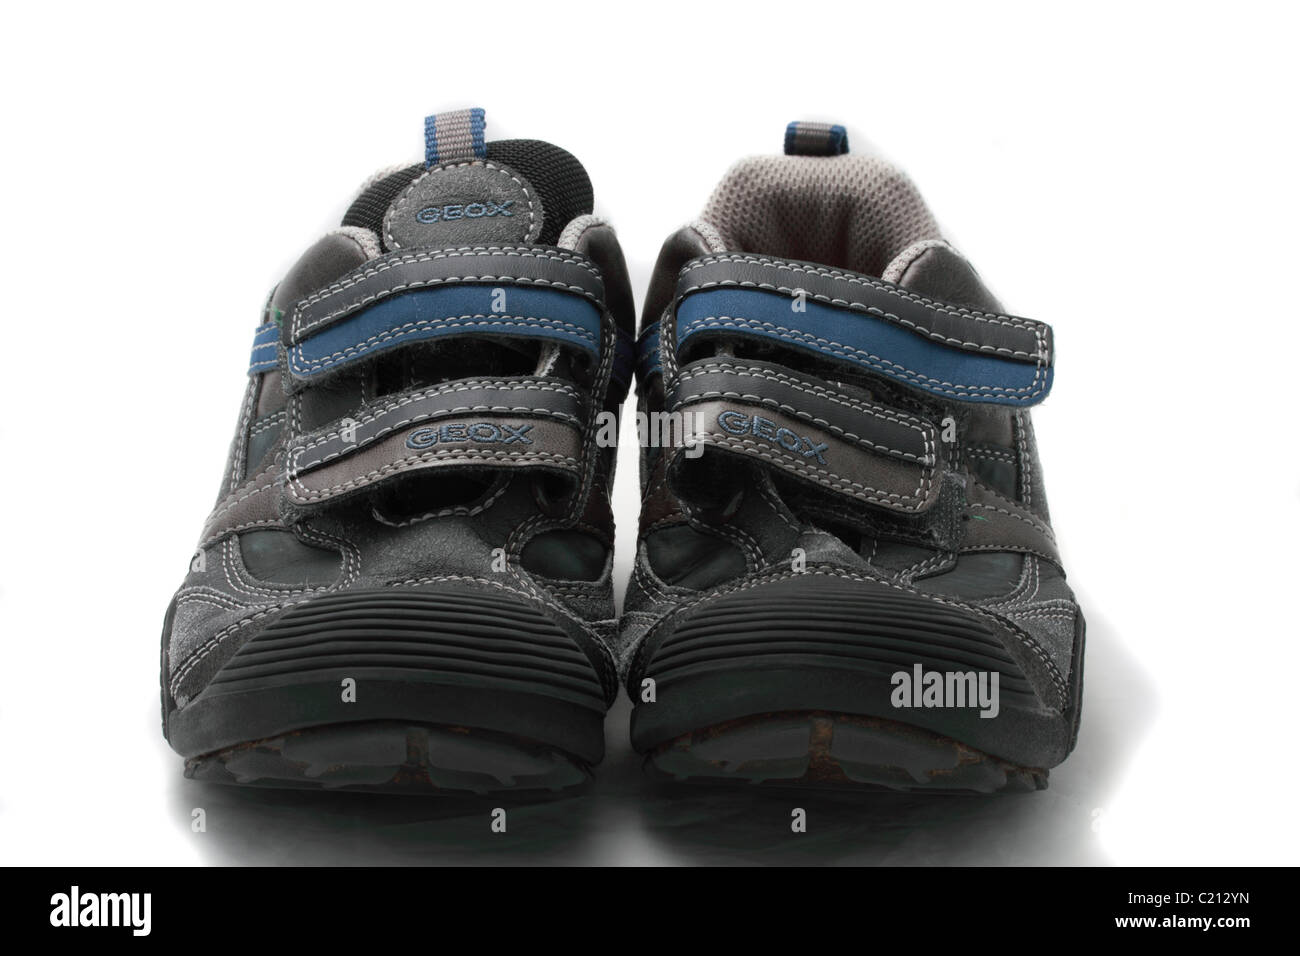 Geox Respira Kind Training Schuhe Geobuck und geölte Veloursleder, grau und  hellblau Größe 33 (UK Größe 1 Stockfotografie - Alamy